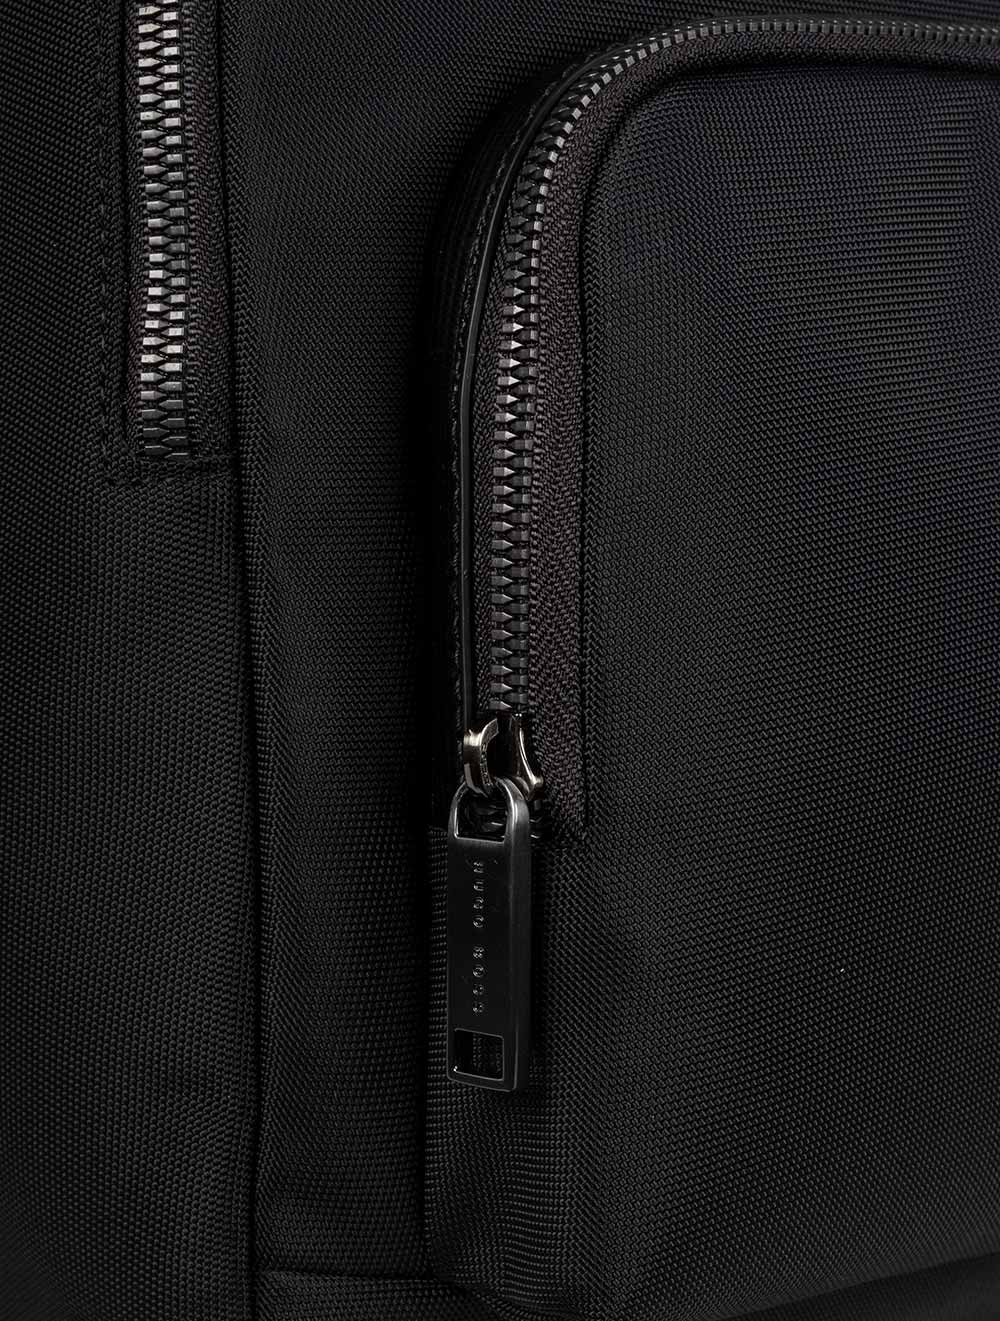 Hugo Boss First Class Backpack